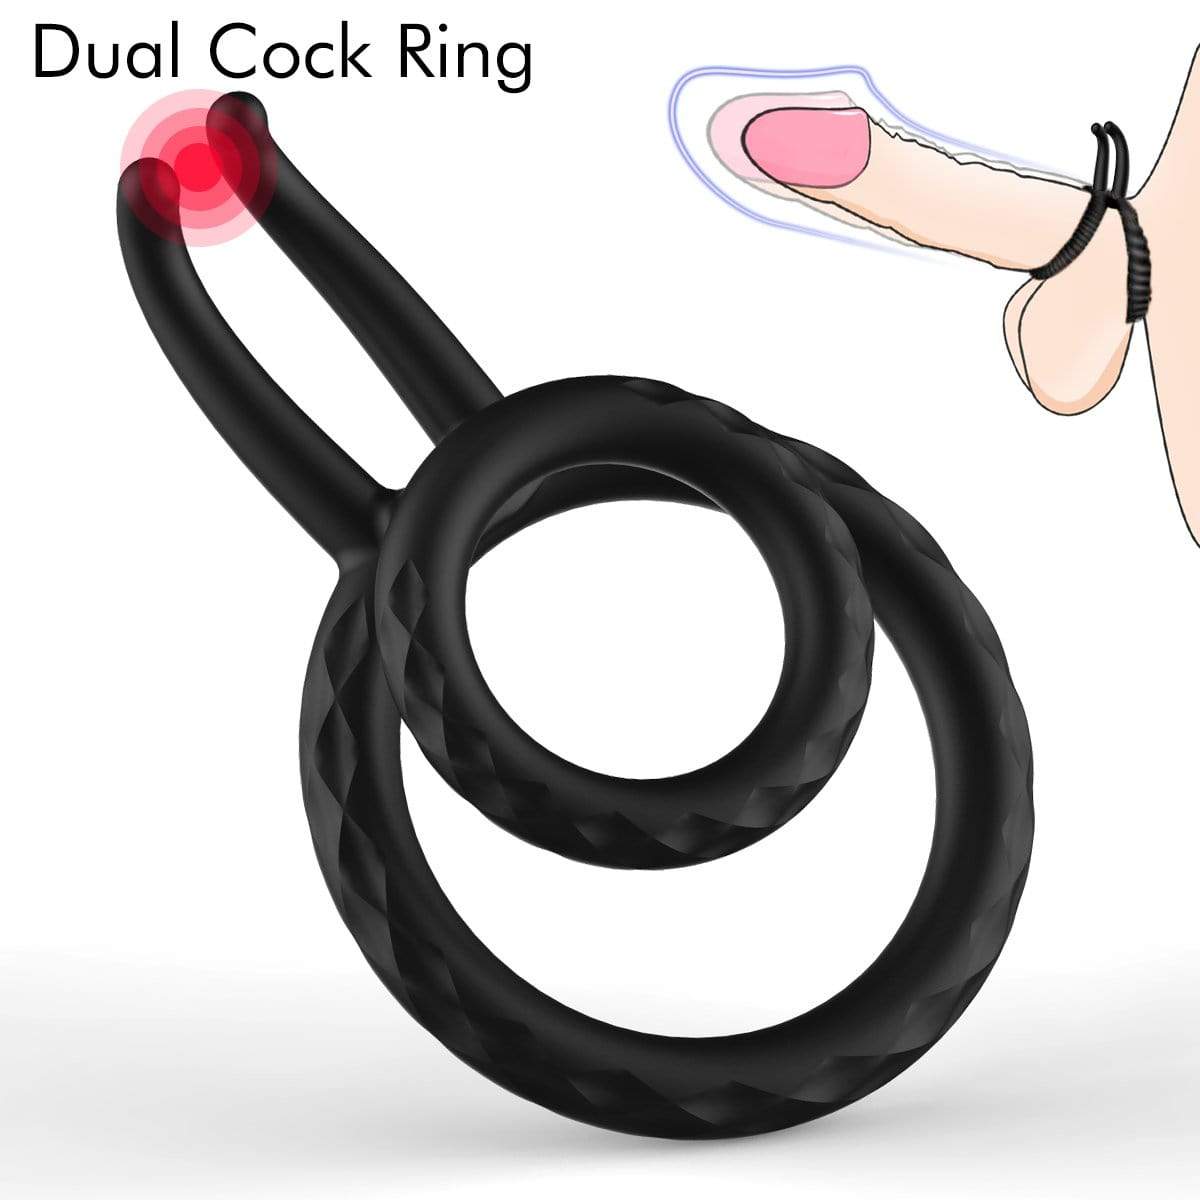 Penis Cock Ring